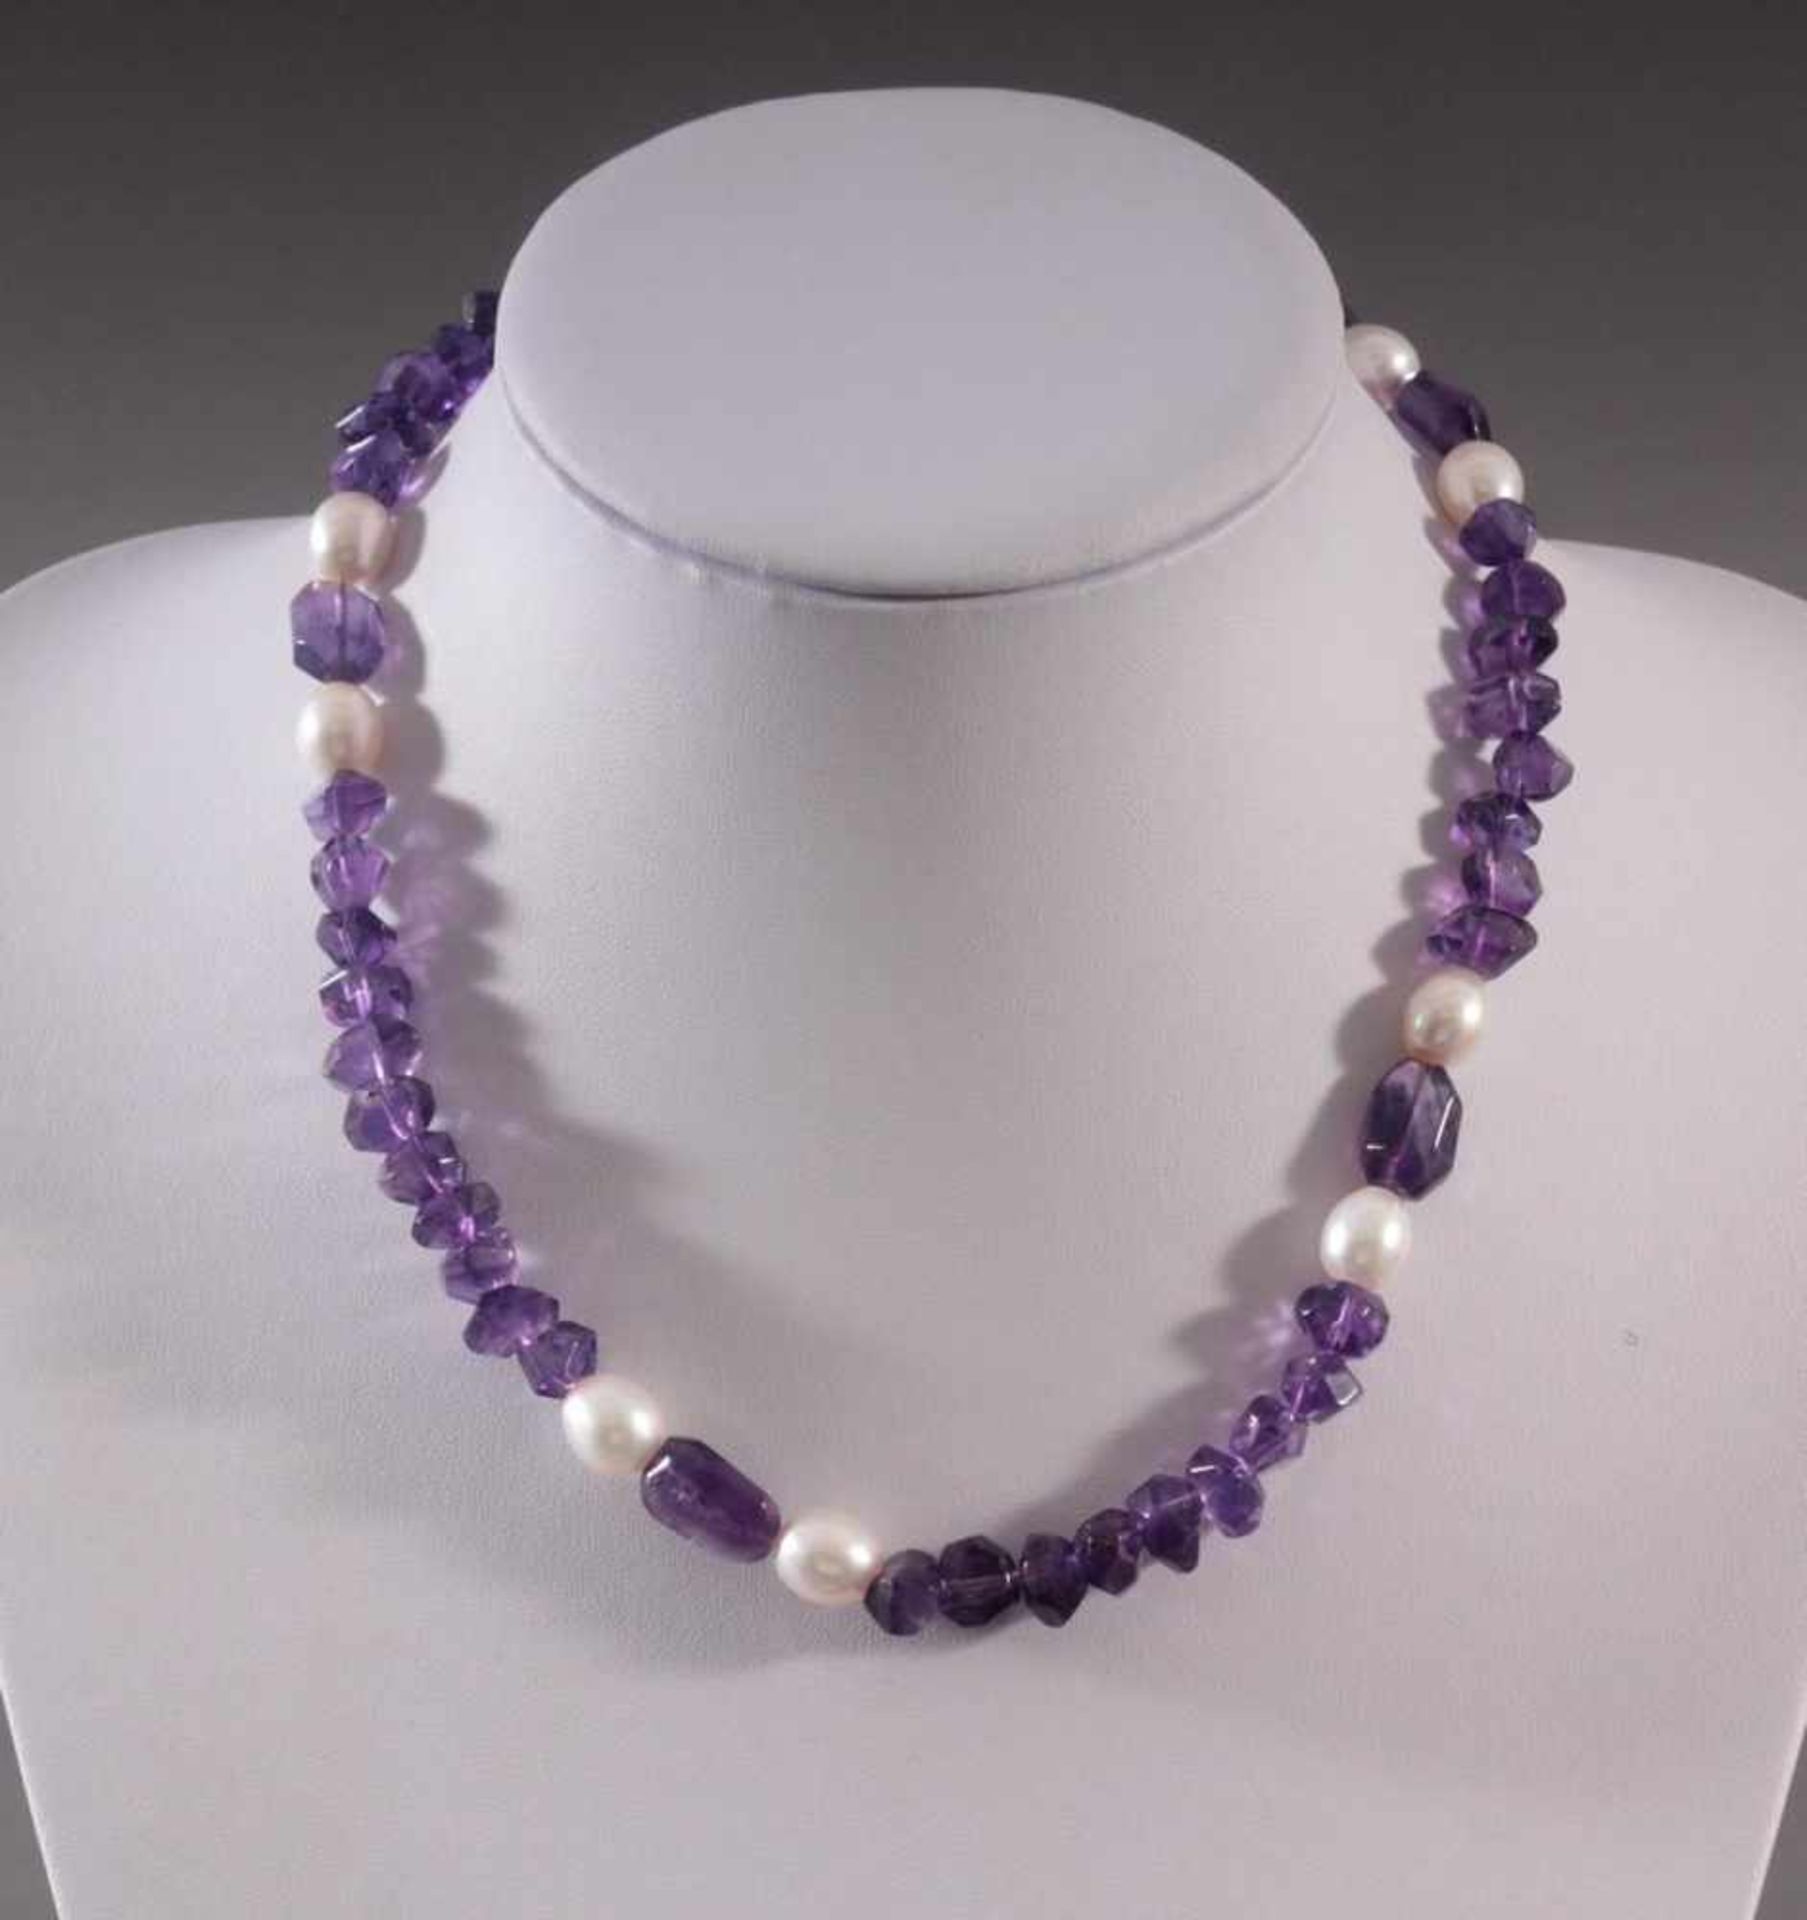 Halskette aus Amethyst und Perlen49 polierte Amethyste und 8 Perlen, magnetische Sterlingsilber-